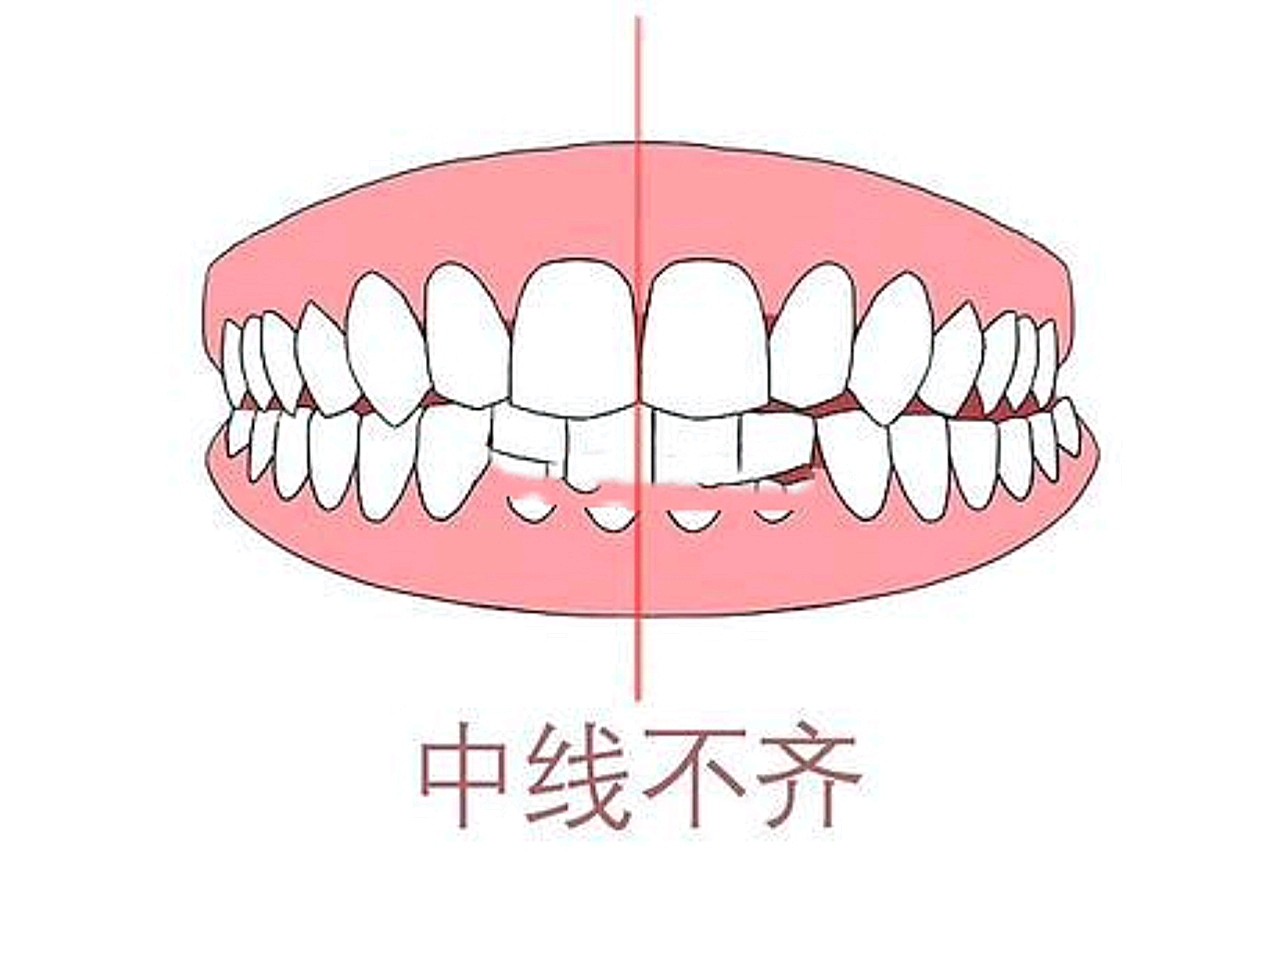 【牙齿中线严重不齐应该怎么办?】